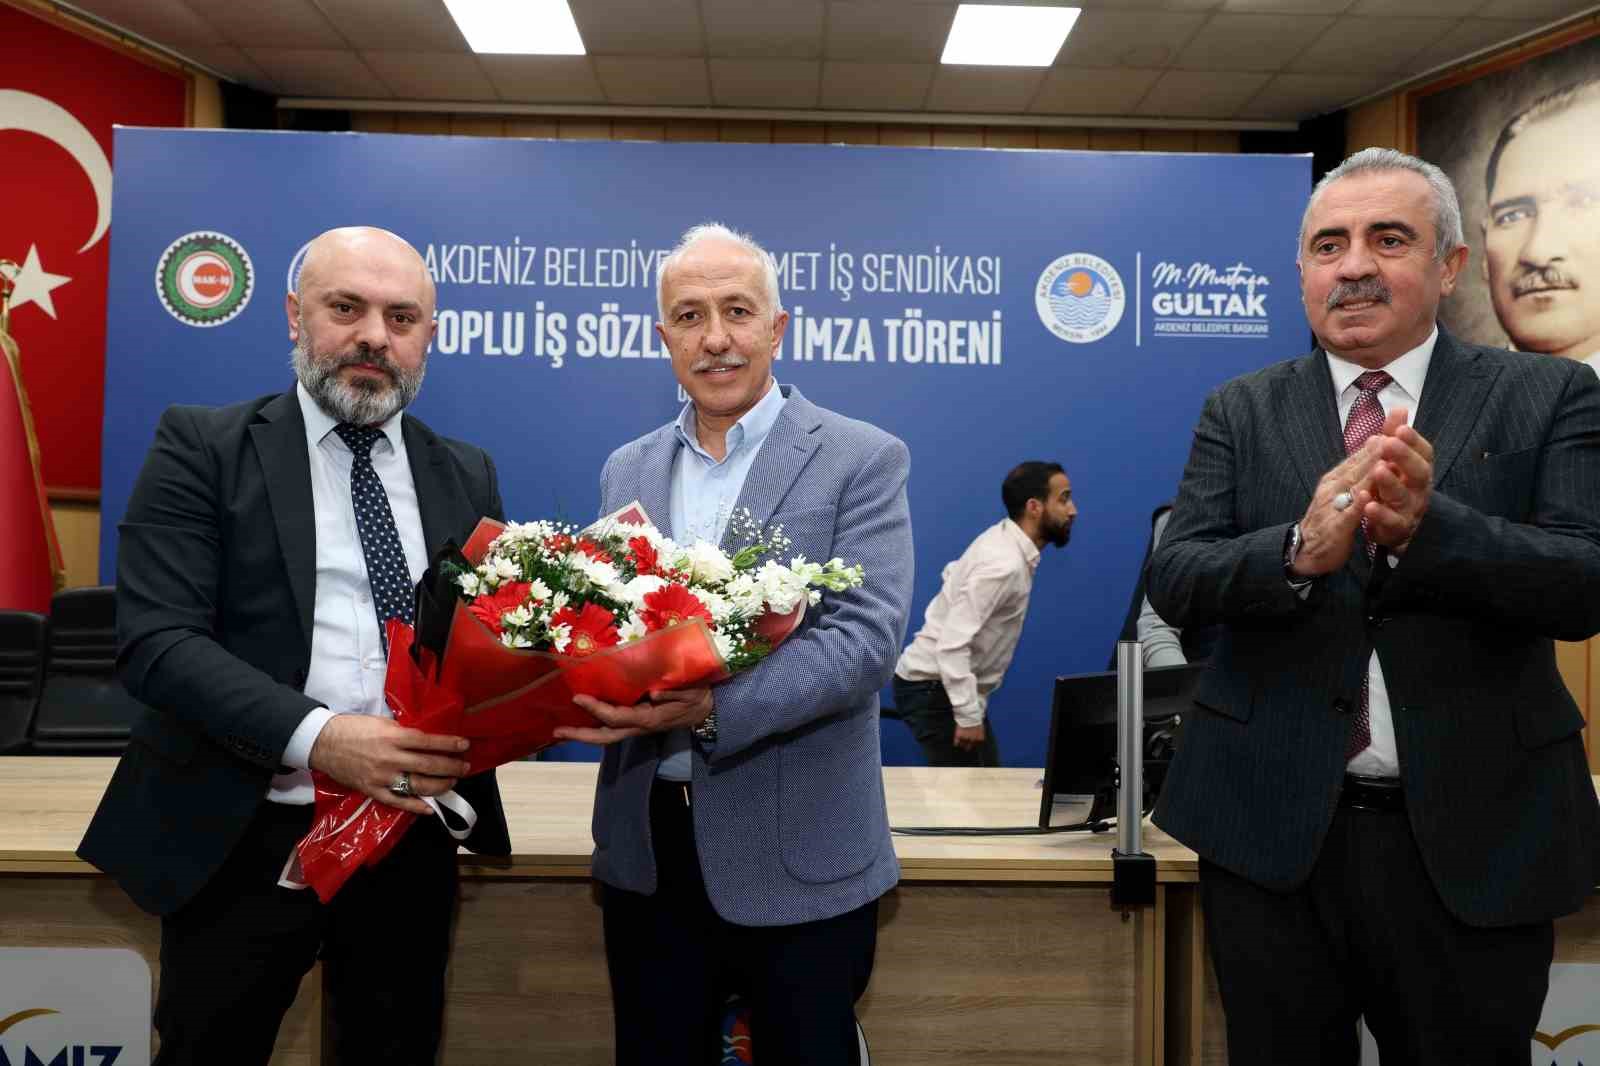 Akdeniz Belediyesinde toplu iş sözleşmesi sevinci
